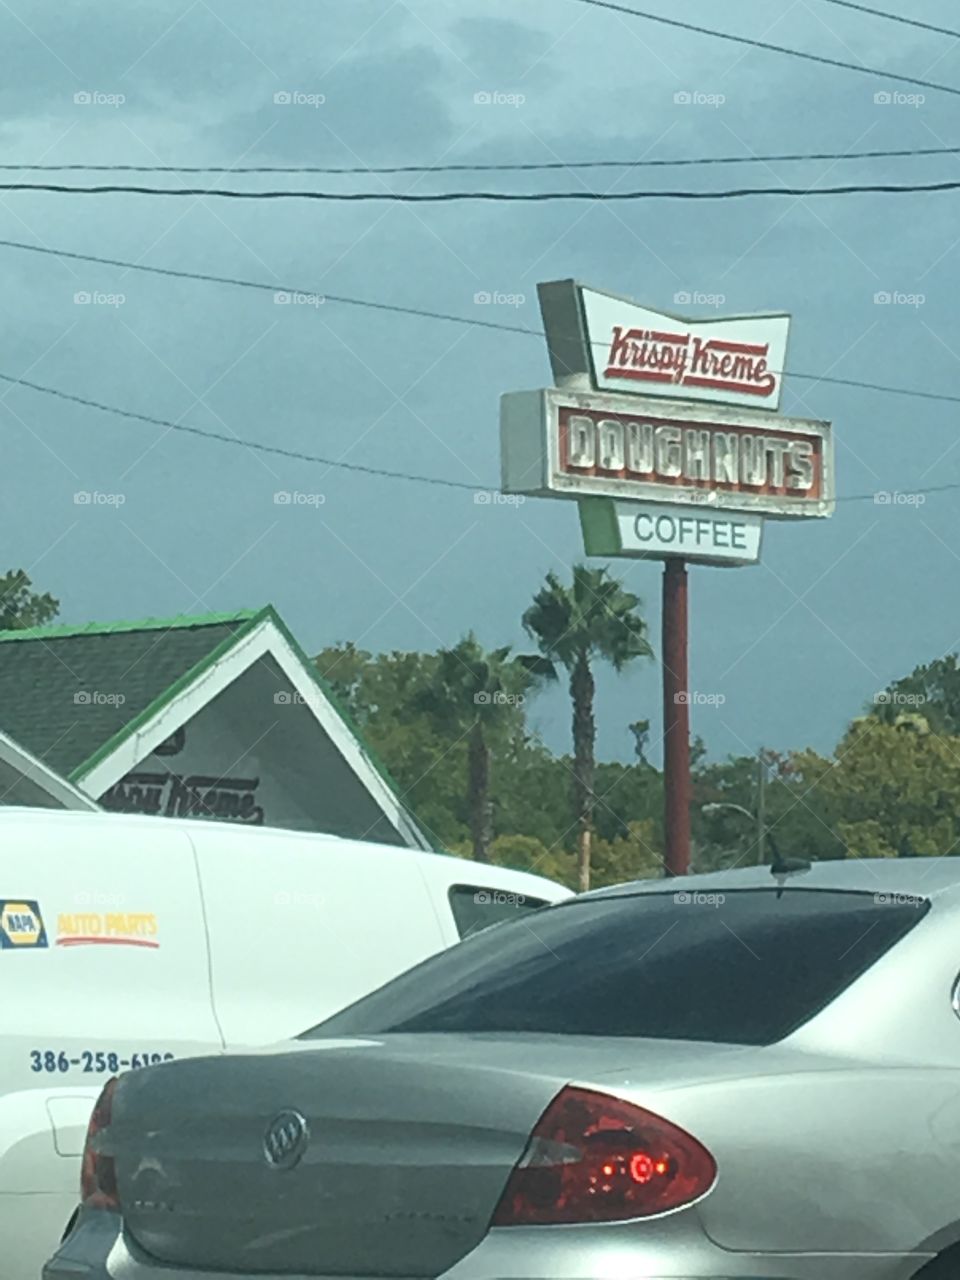 Krispy Kreme Daytona Beach 